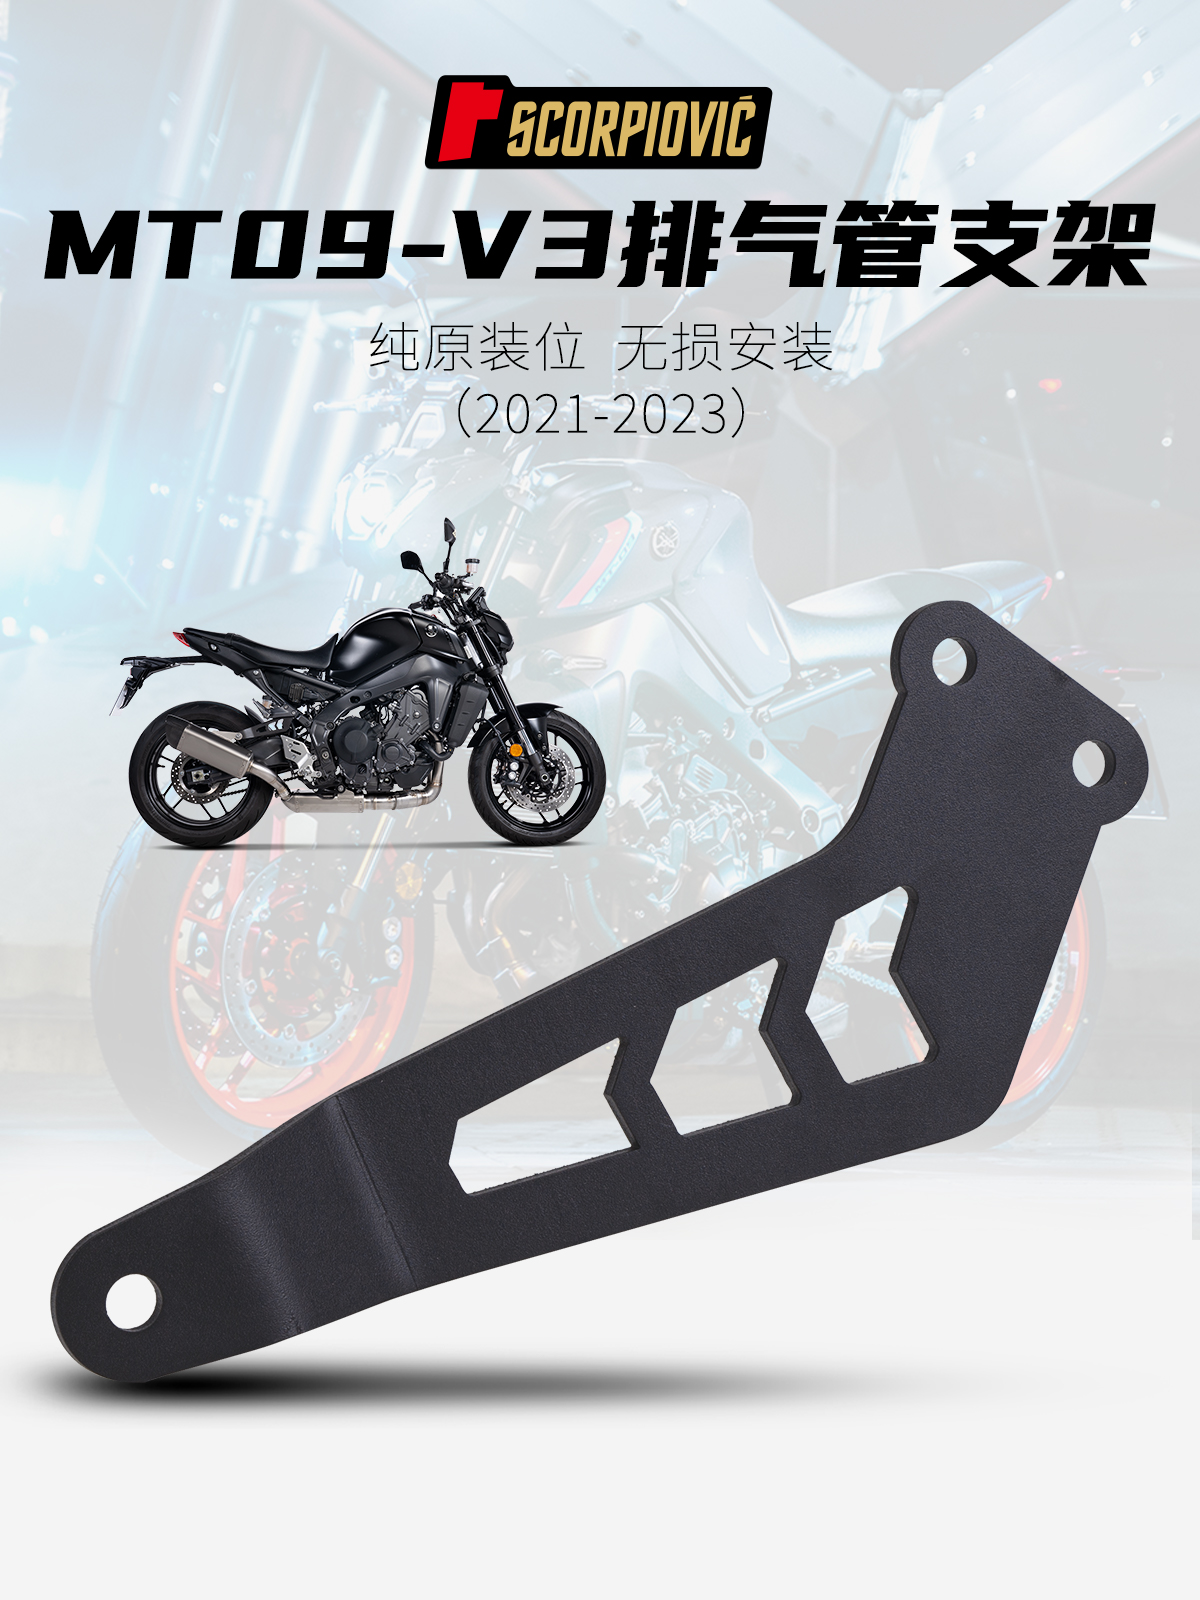 MT09-V3摩托车改装排气管 不锈钢/铝合金支架专车专用 21-23P年